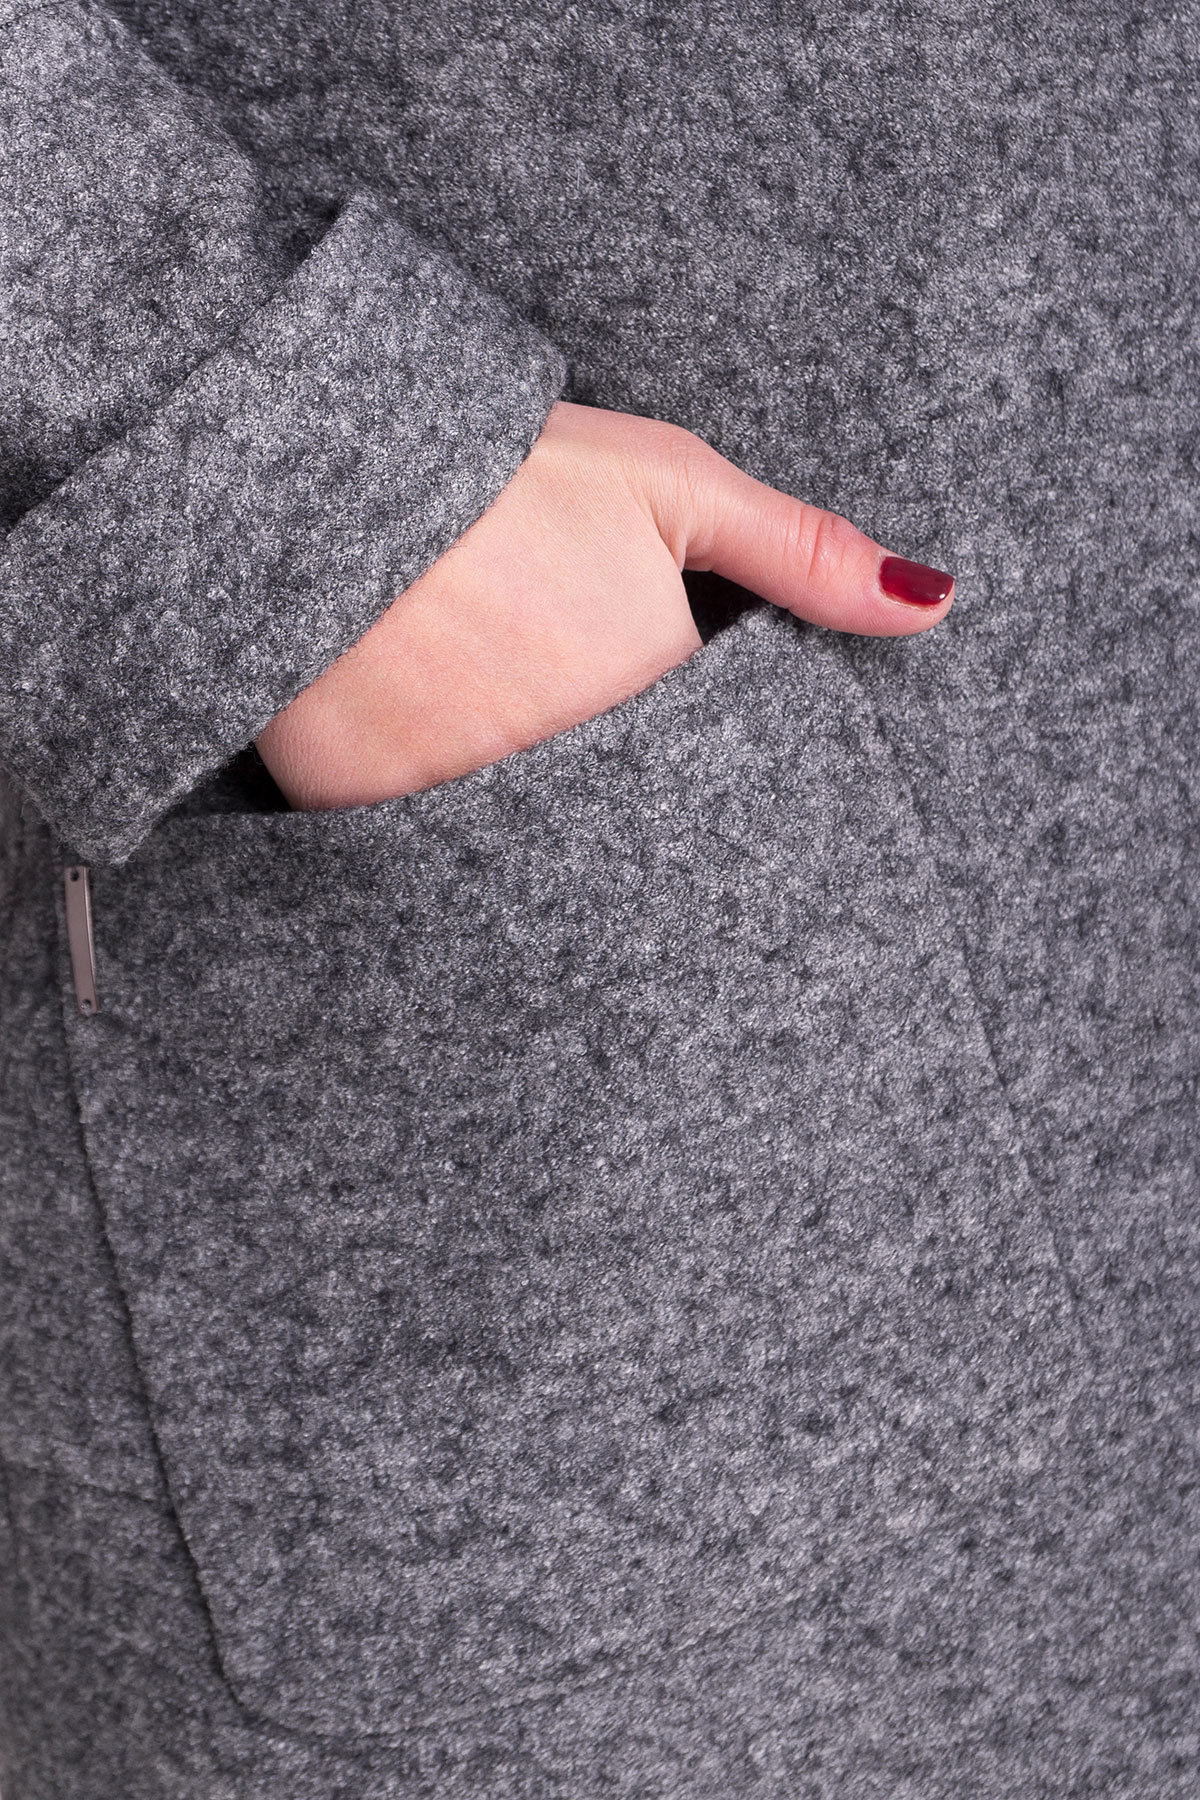 Пальто зима с капюшоном Анита Donna 3720 АРТ. 19290 Цвет: Серый Темный LW-5 - фото 5, интернет магазин tm-modus.ru